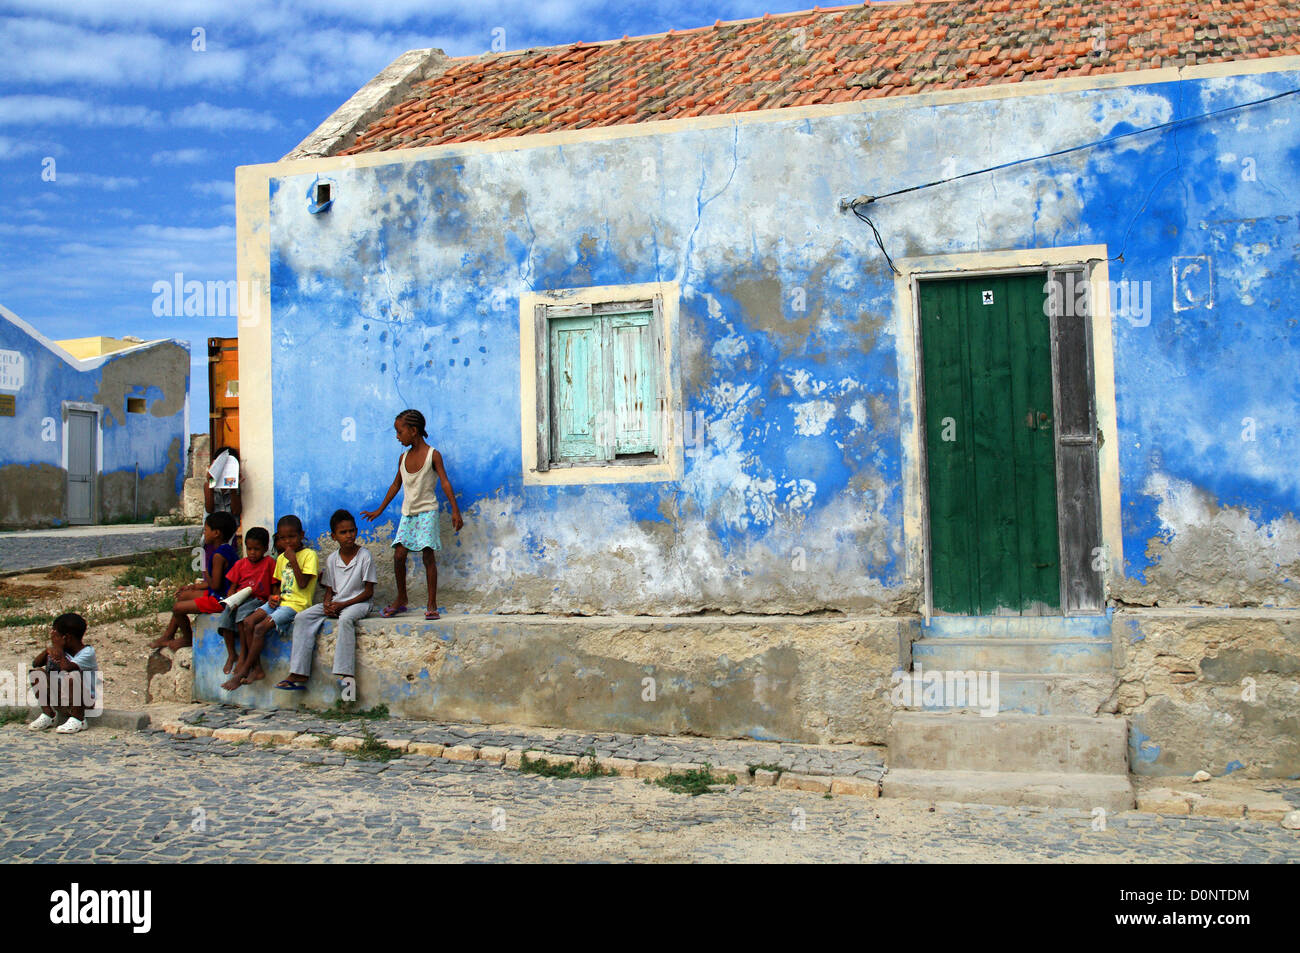 Local children in Boa Vista, Cape Verde Stock Photo